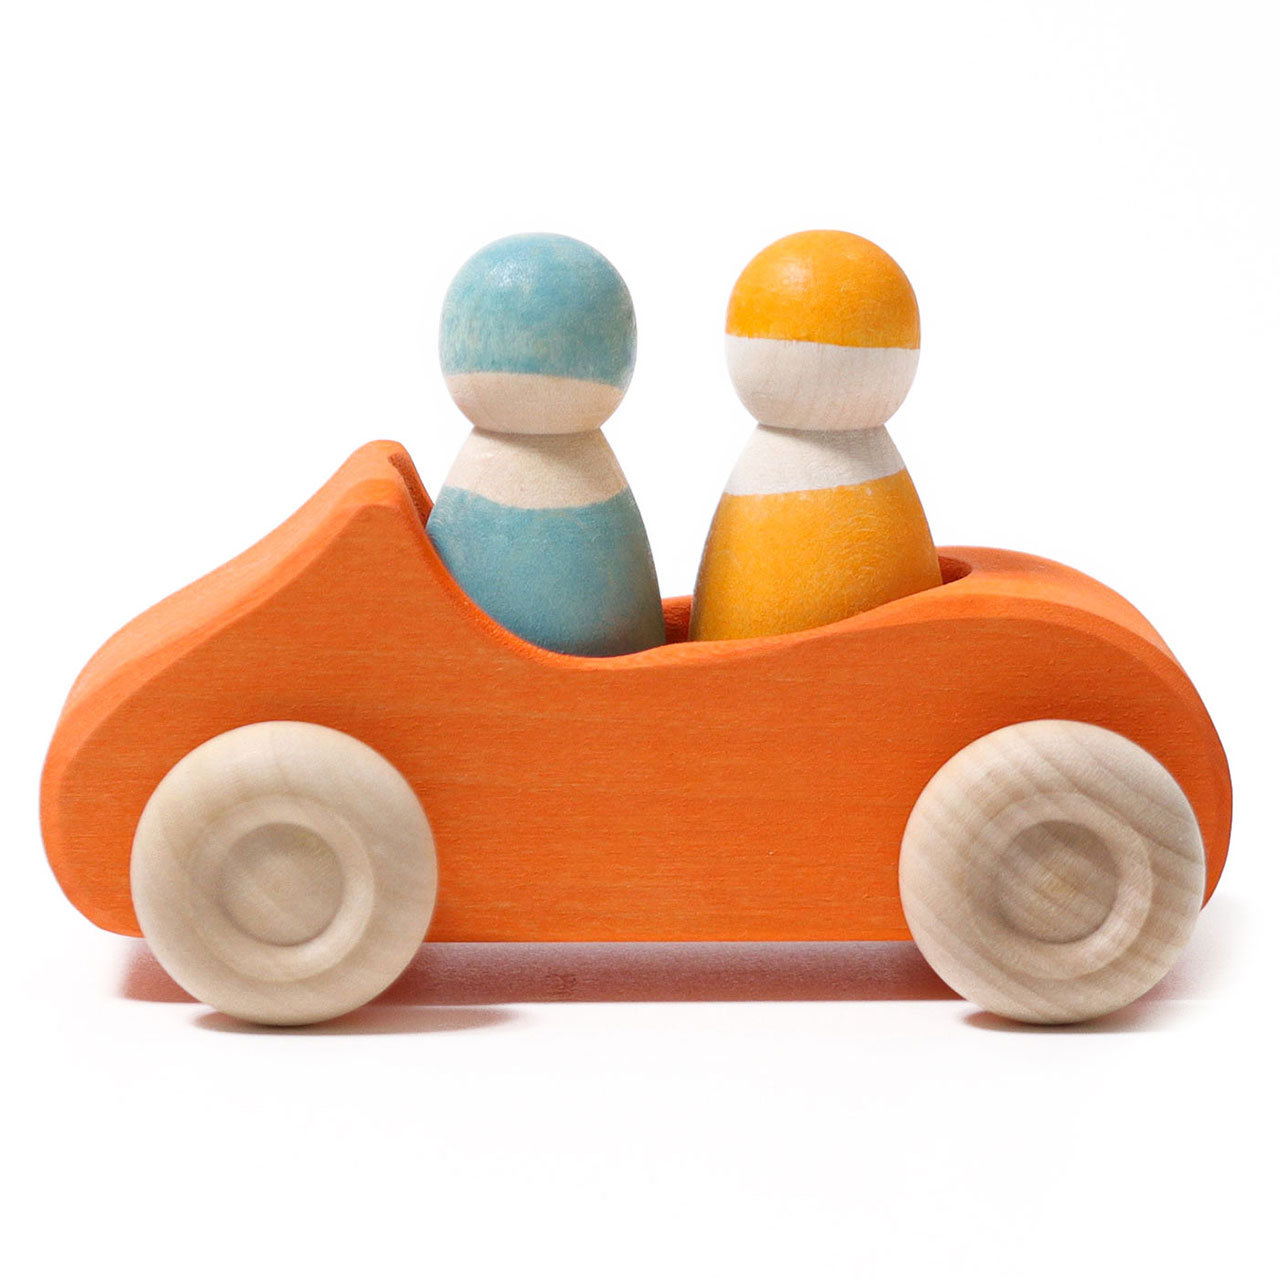 Spielauto Spielfahrzeug Holzauto Holzspielzeug Kinderspielzeug Kinderspiel Goki 